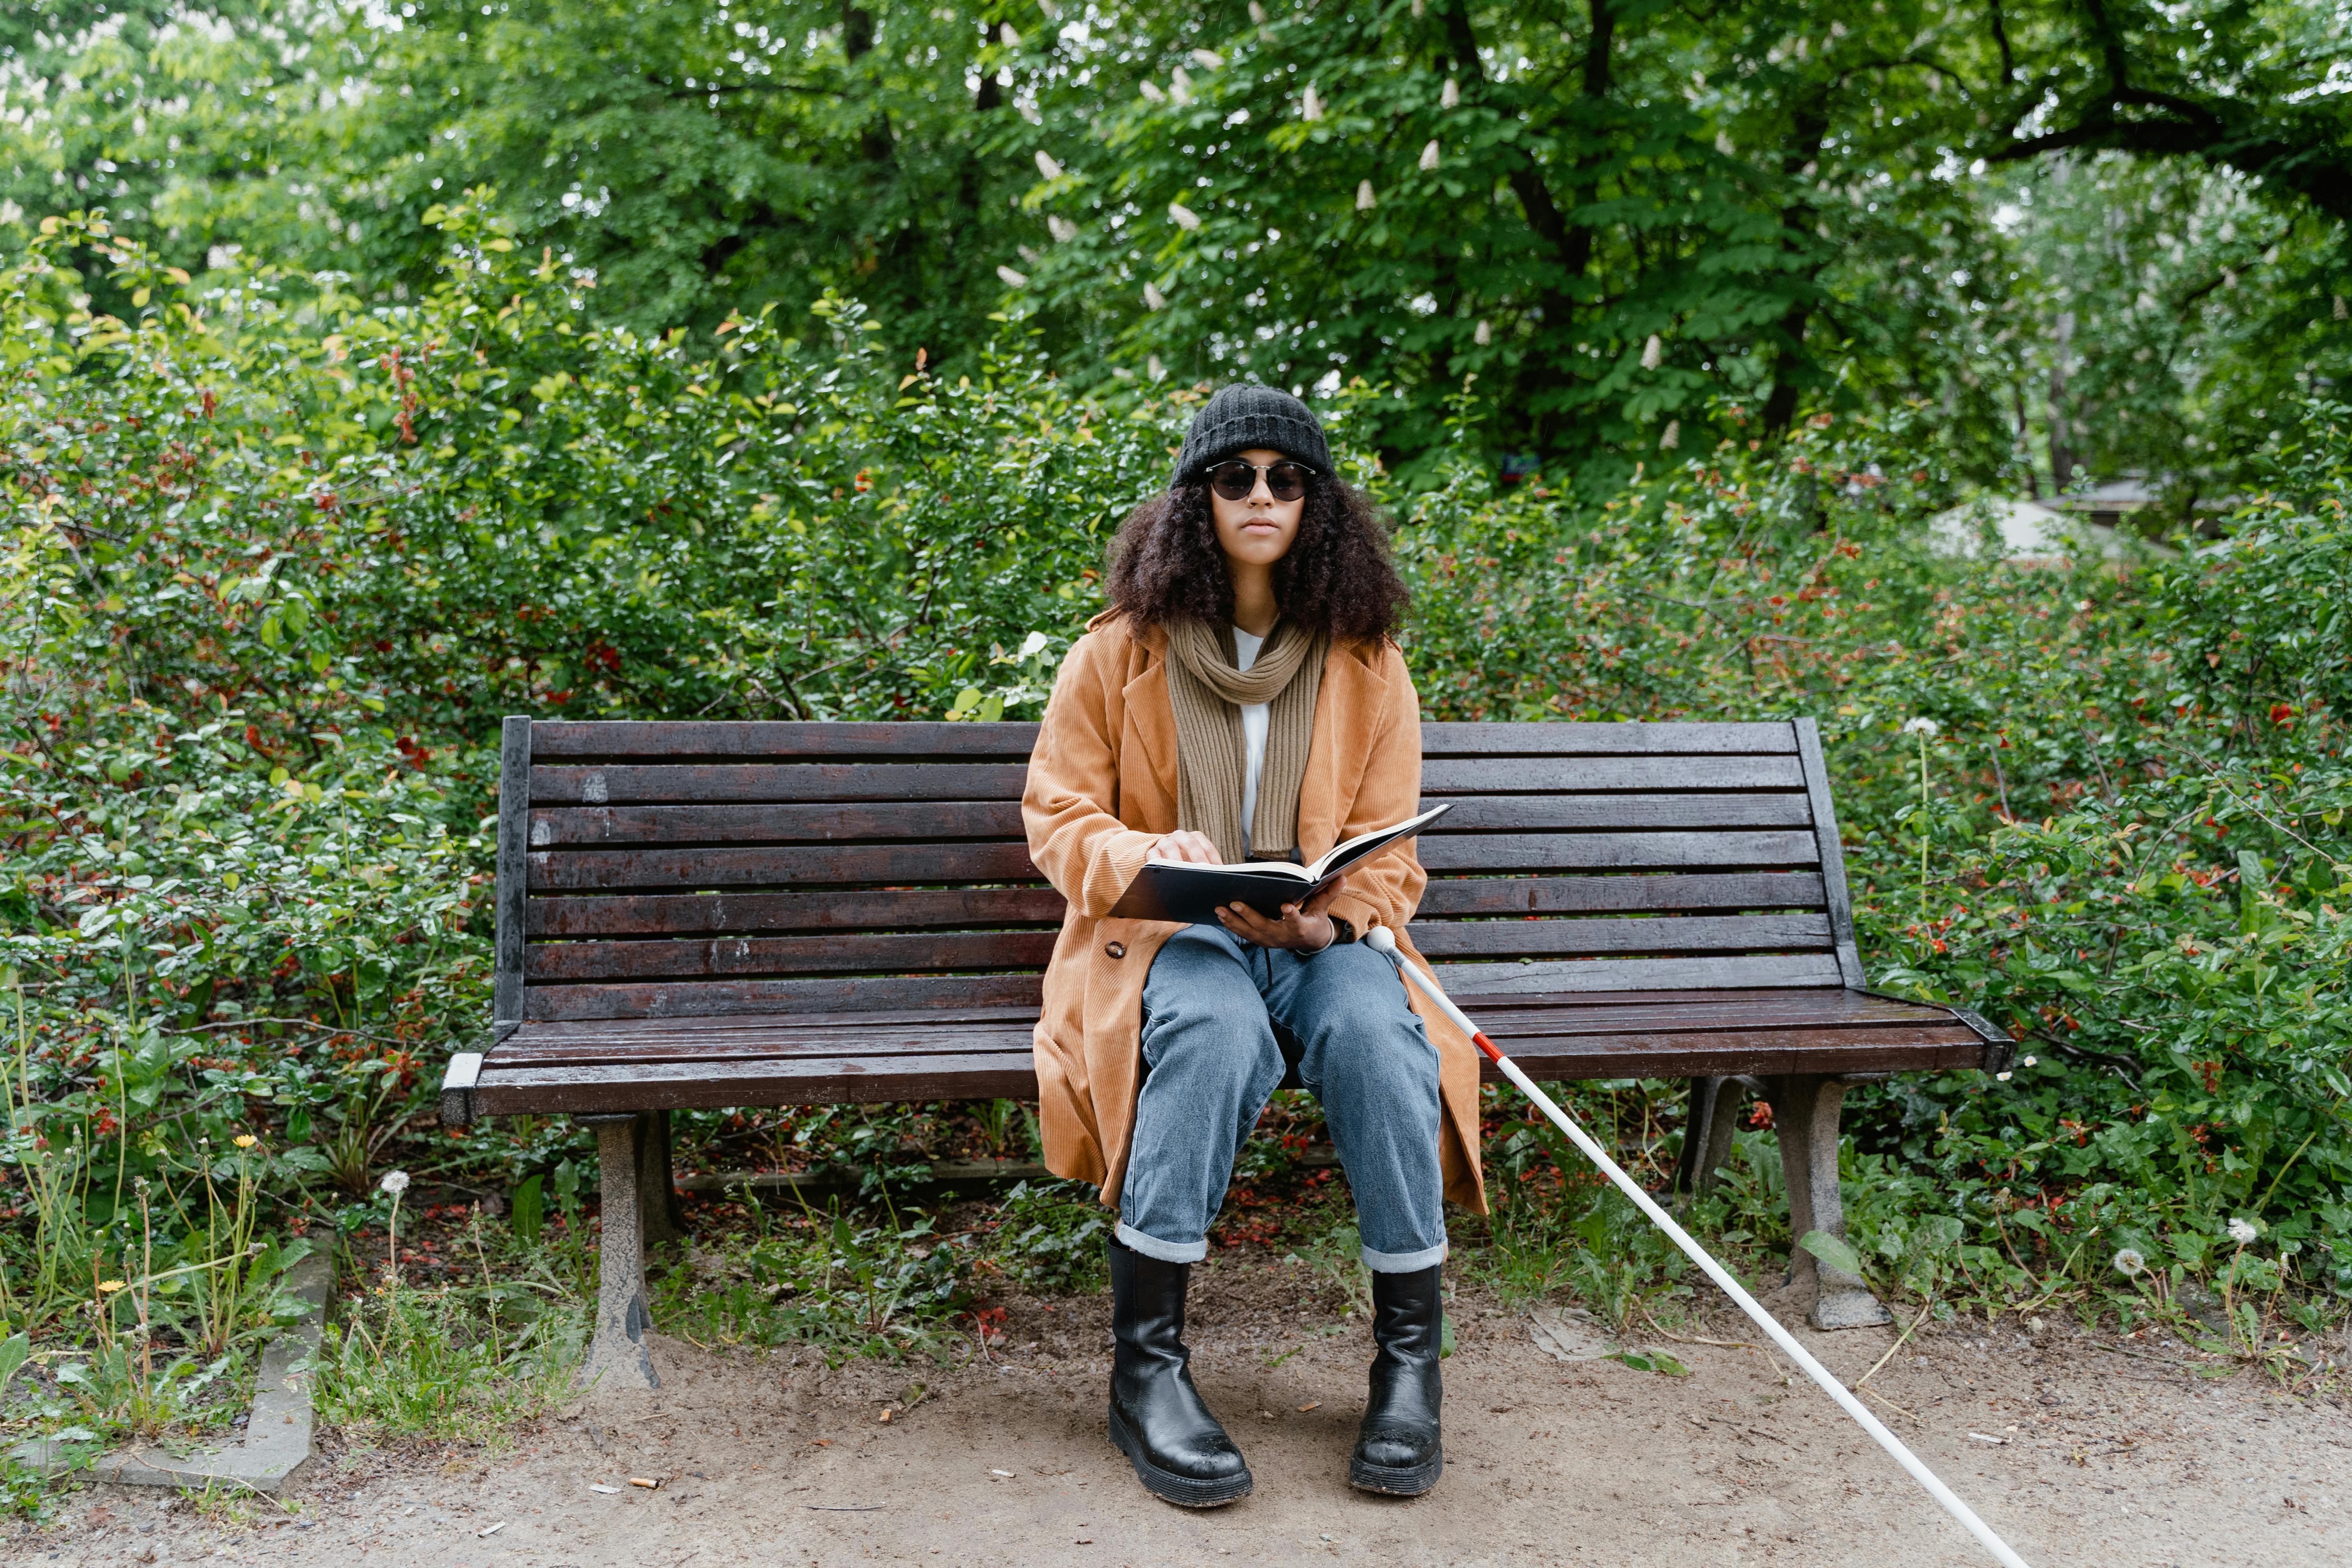 Une femme aveugle sur un banc public | Source : Pexels